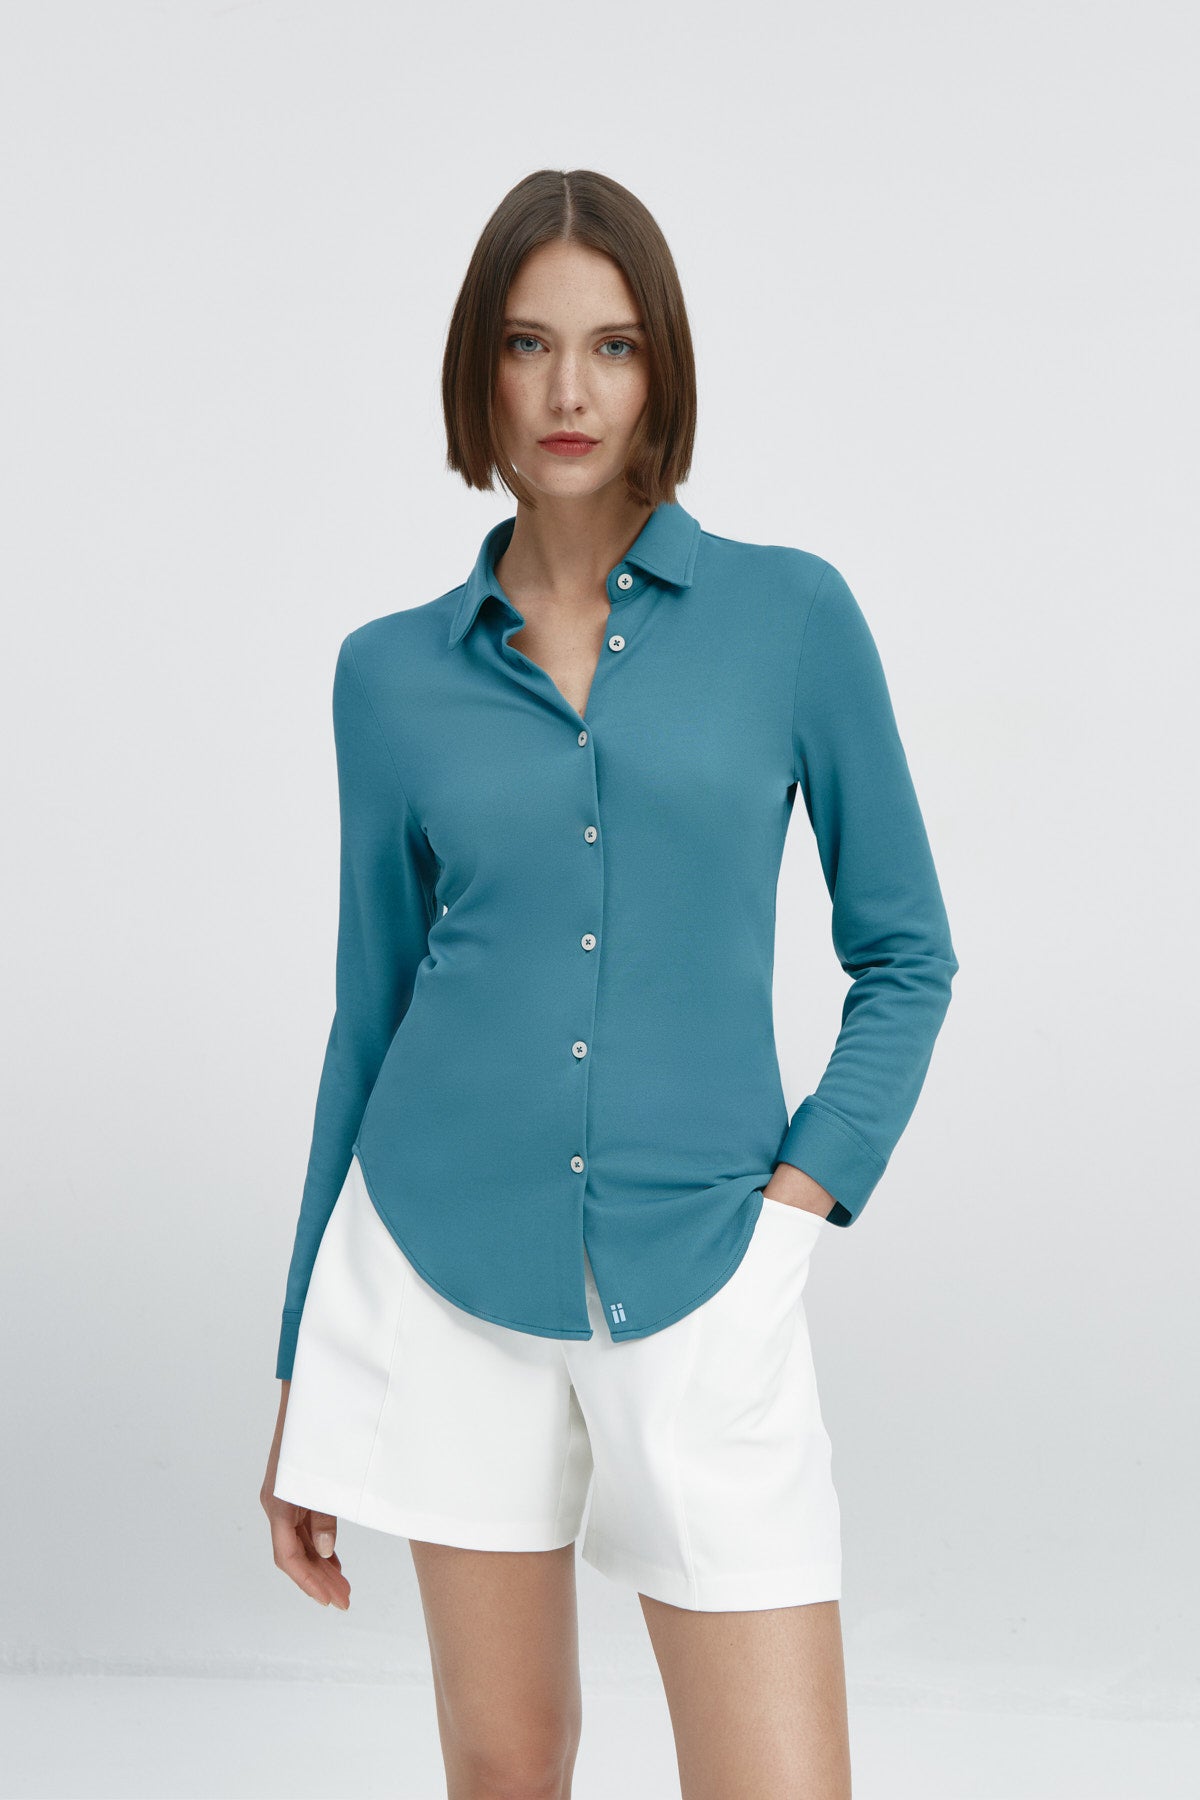  Camisa para mujer slim color azul neptuno, básica y versátil. Foto frente